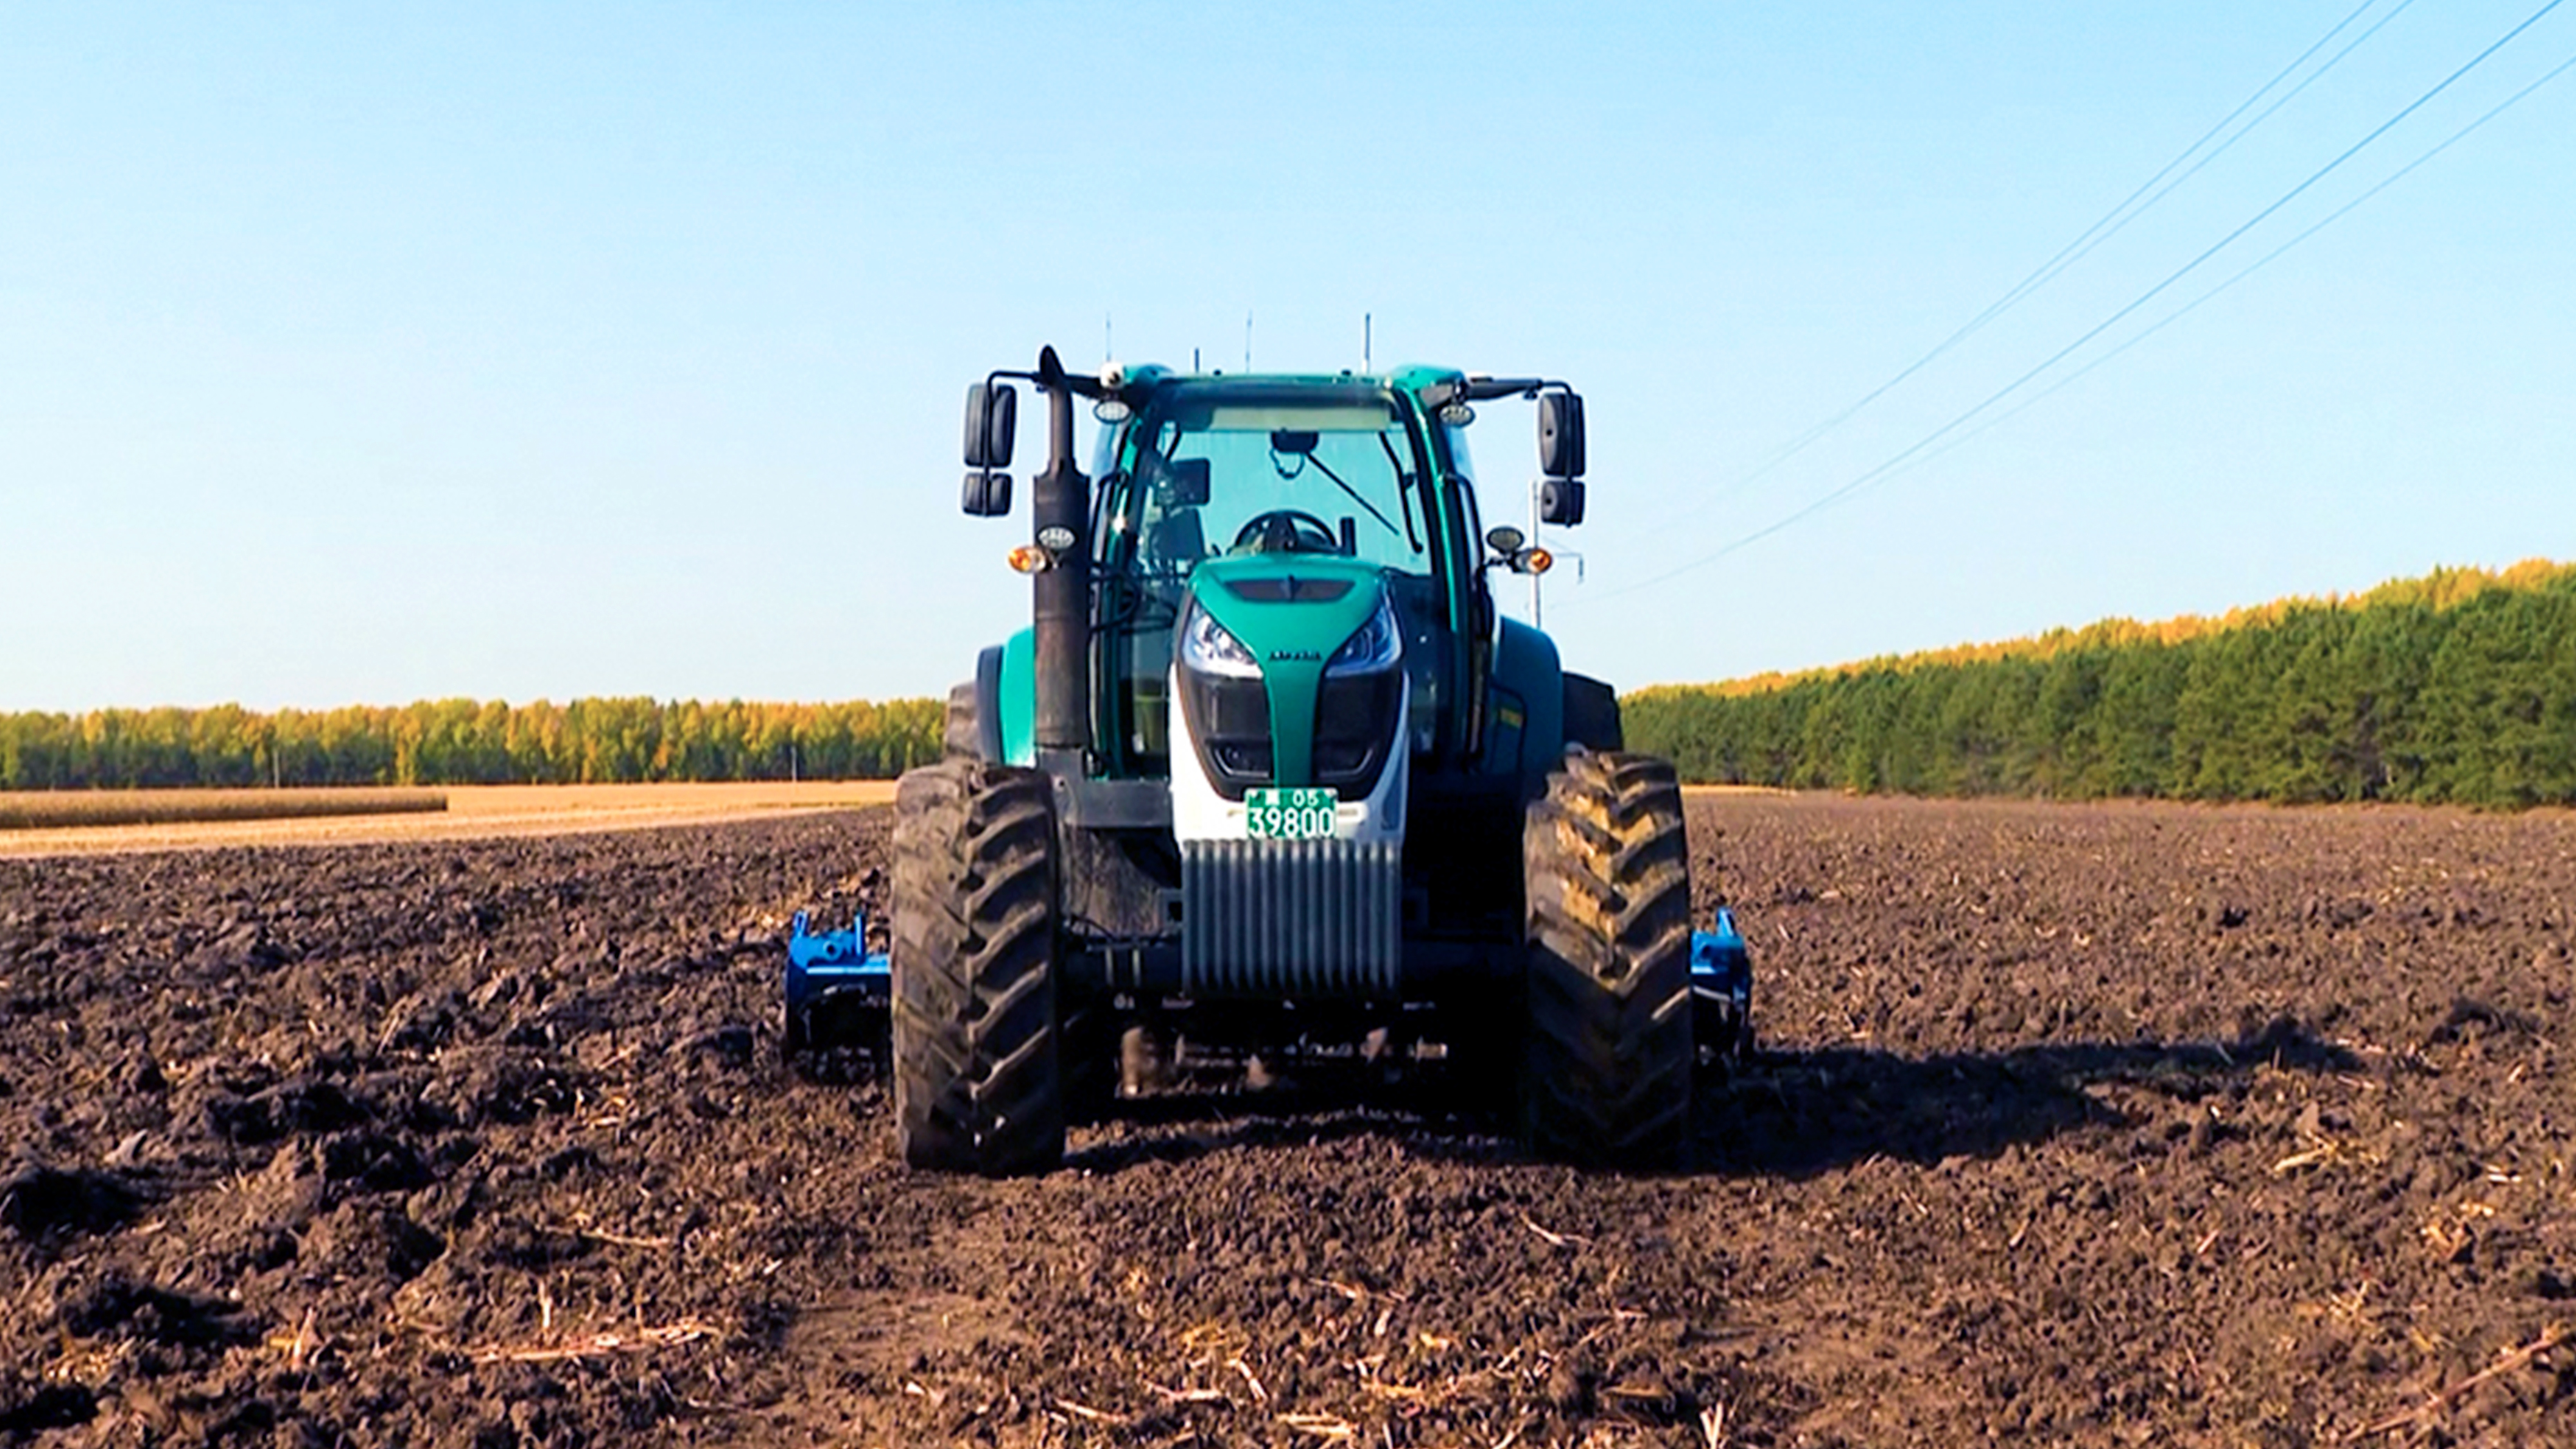 雷沃P7000CVT智能拖拉机正在田间地头作业